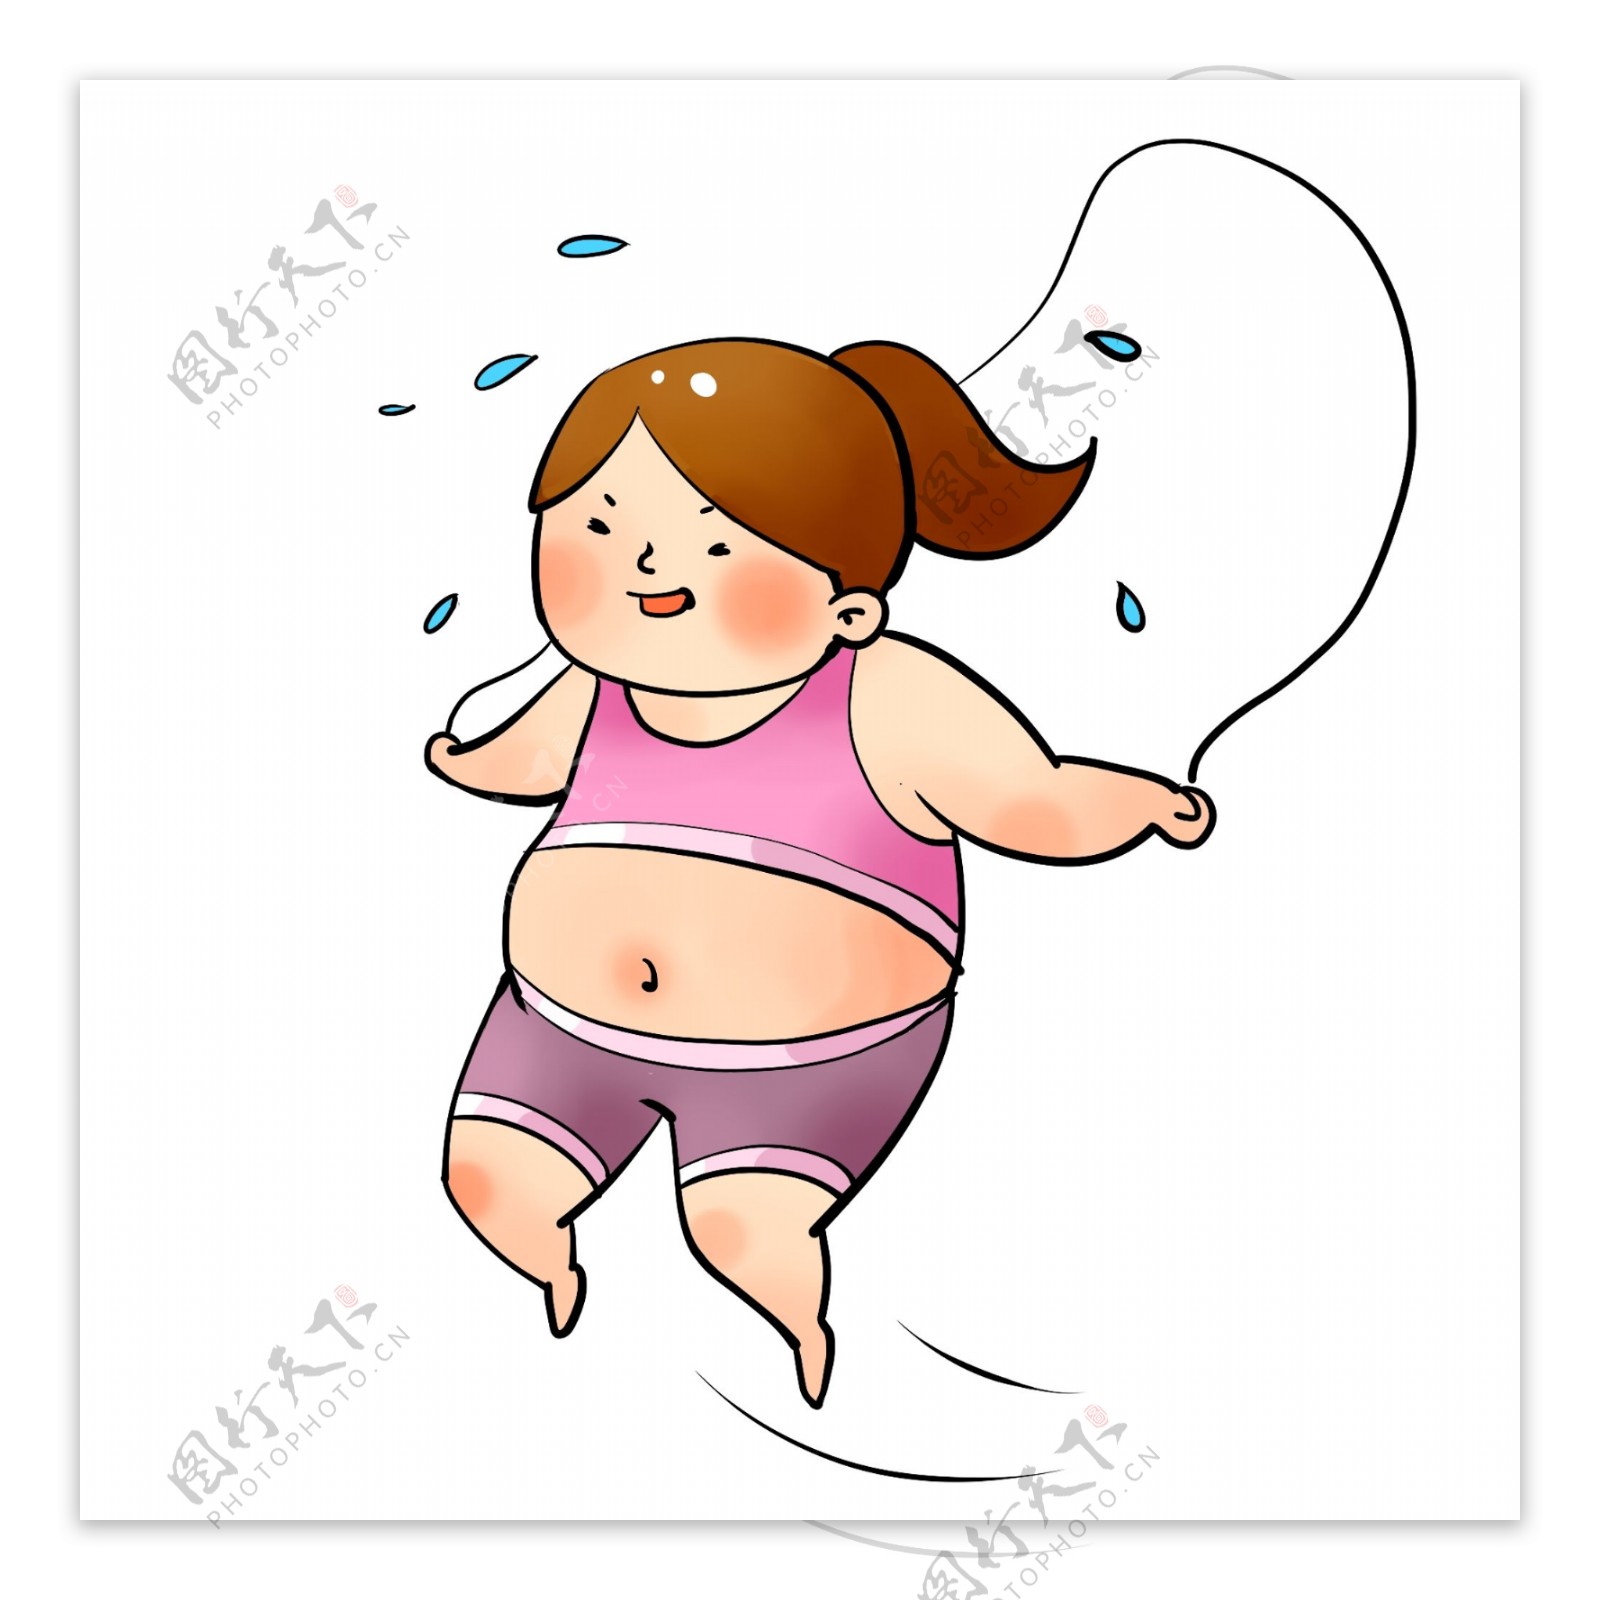 跳绳的胖女孩卡通可爱元素图案